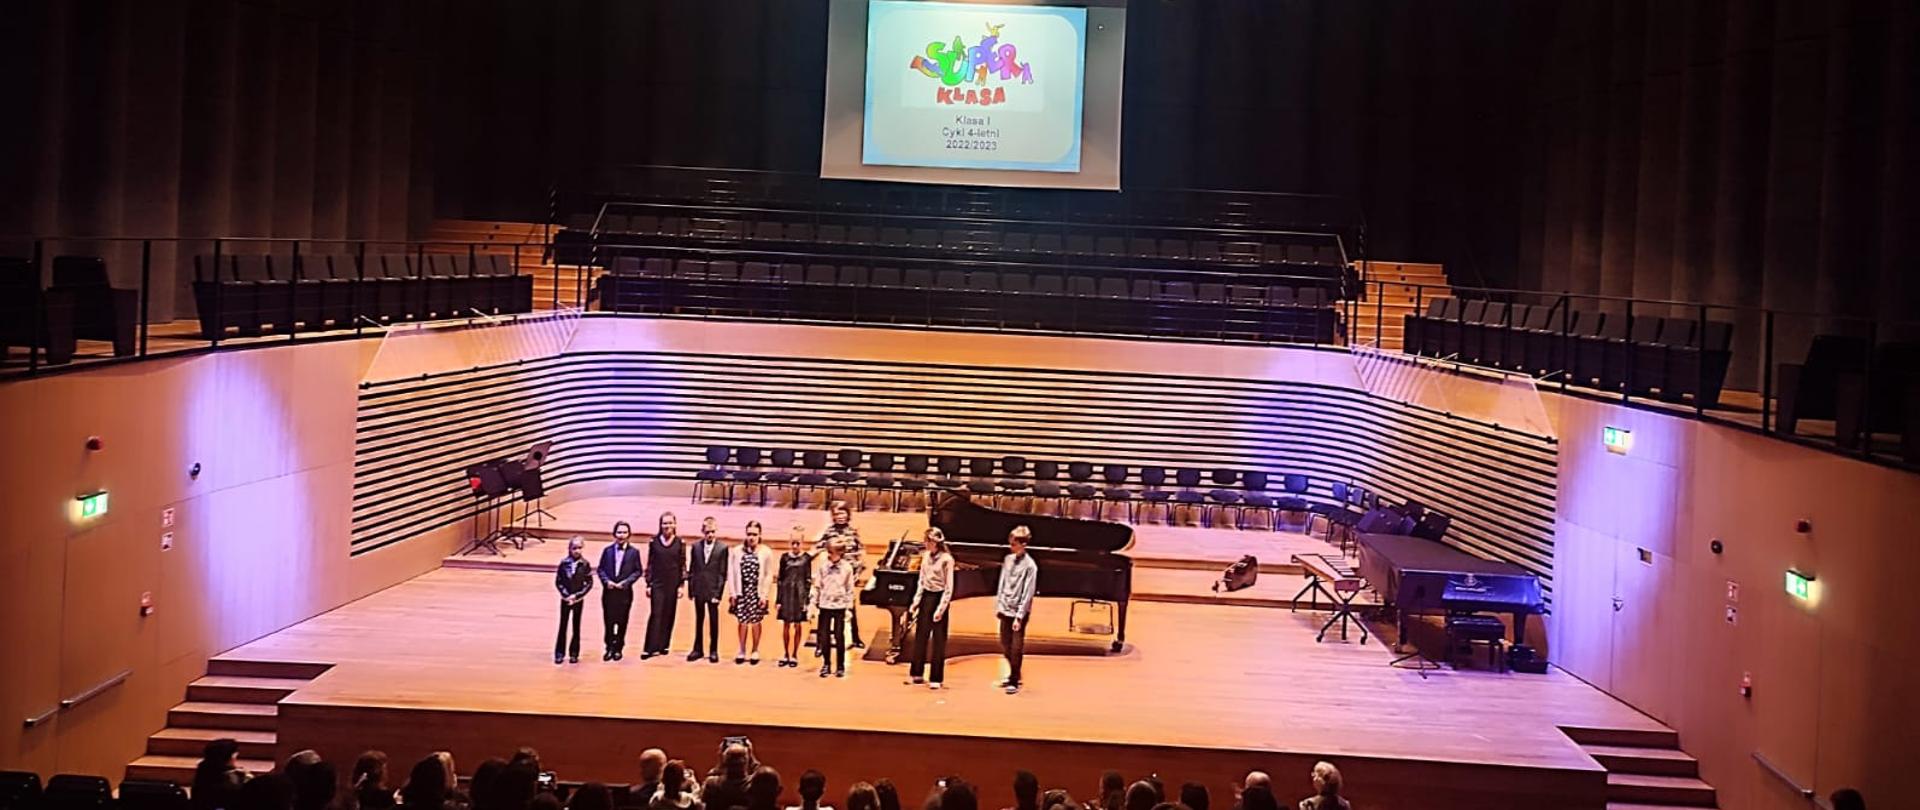 Dziewięcioro dzieci stoi w rzędzie na scenie, za nimi kobieta i fortepian. Nad scena widać rzutnik z kolorowym napisem Super klasa - klasa I cykl 4-letni 2022/2023.